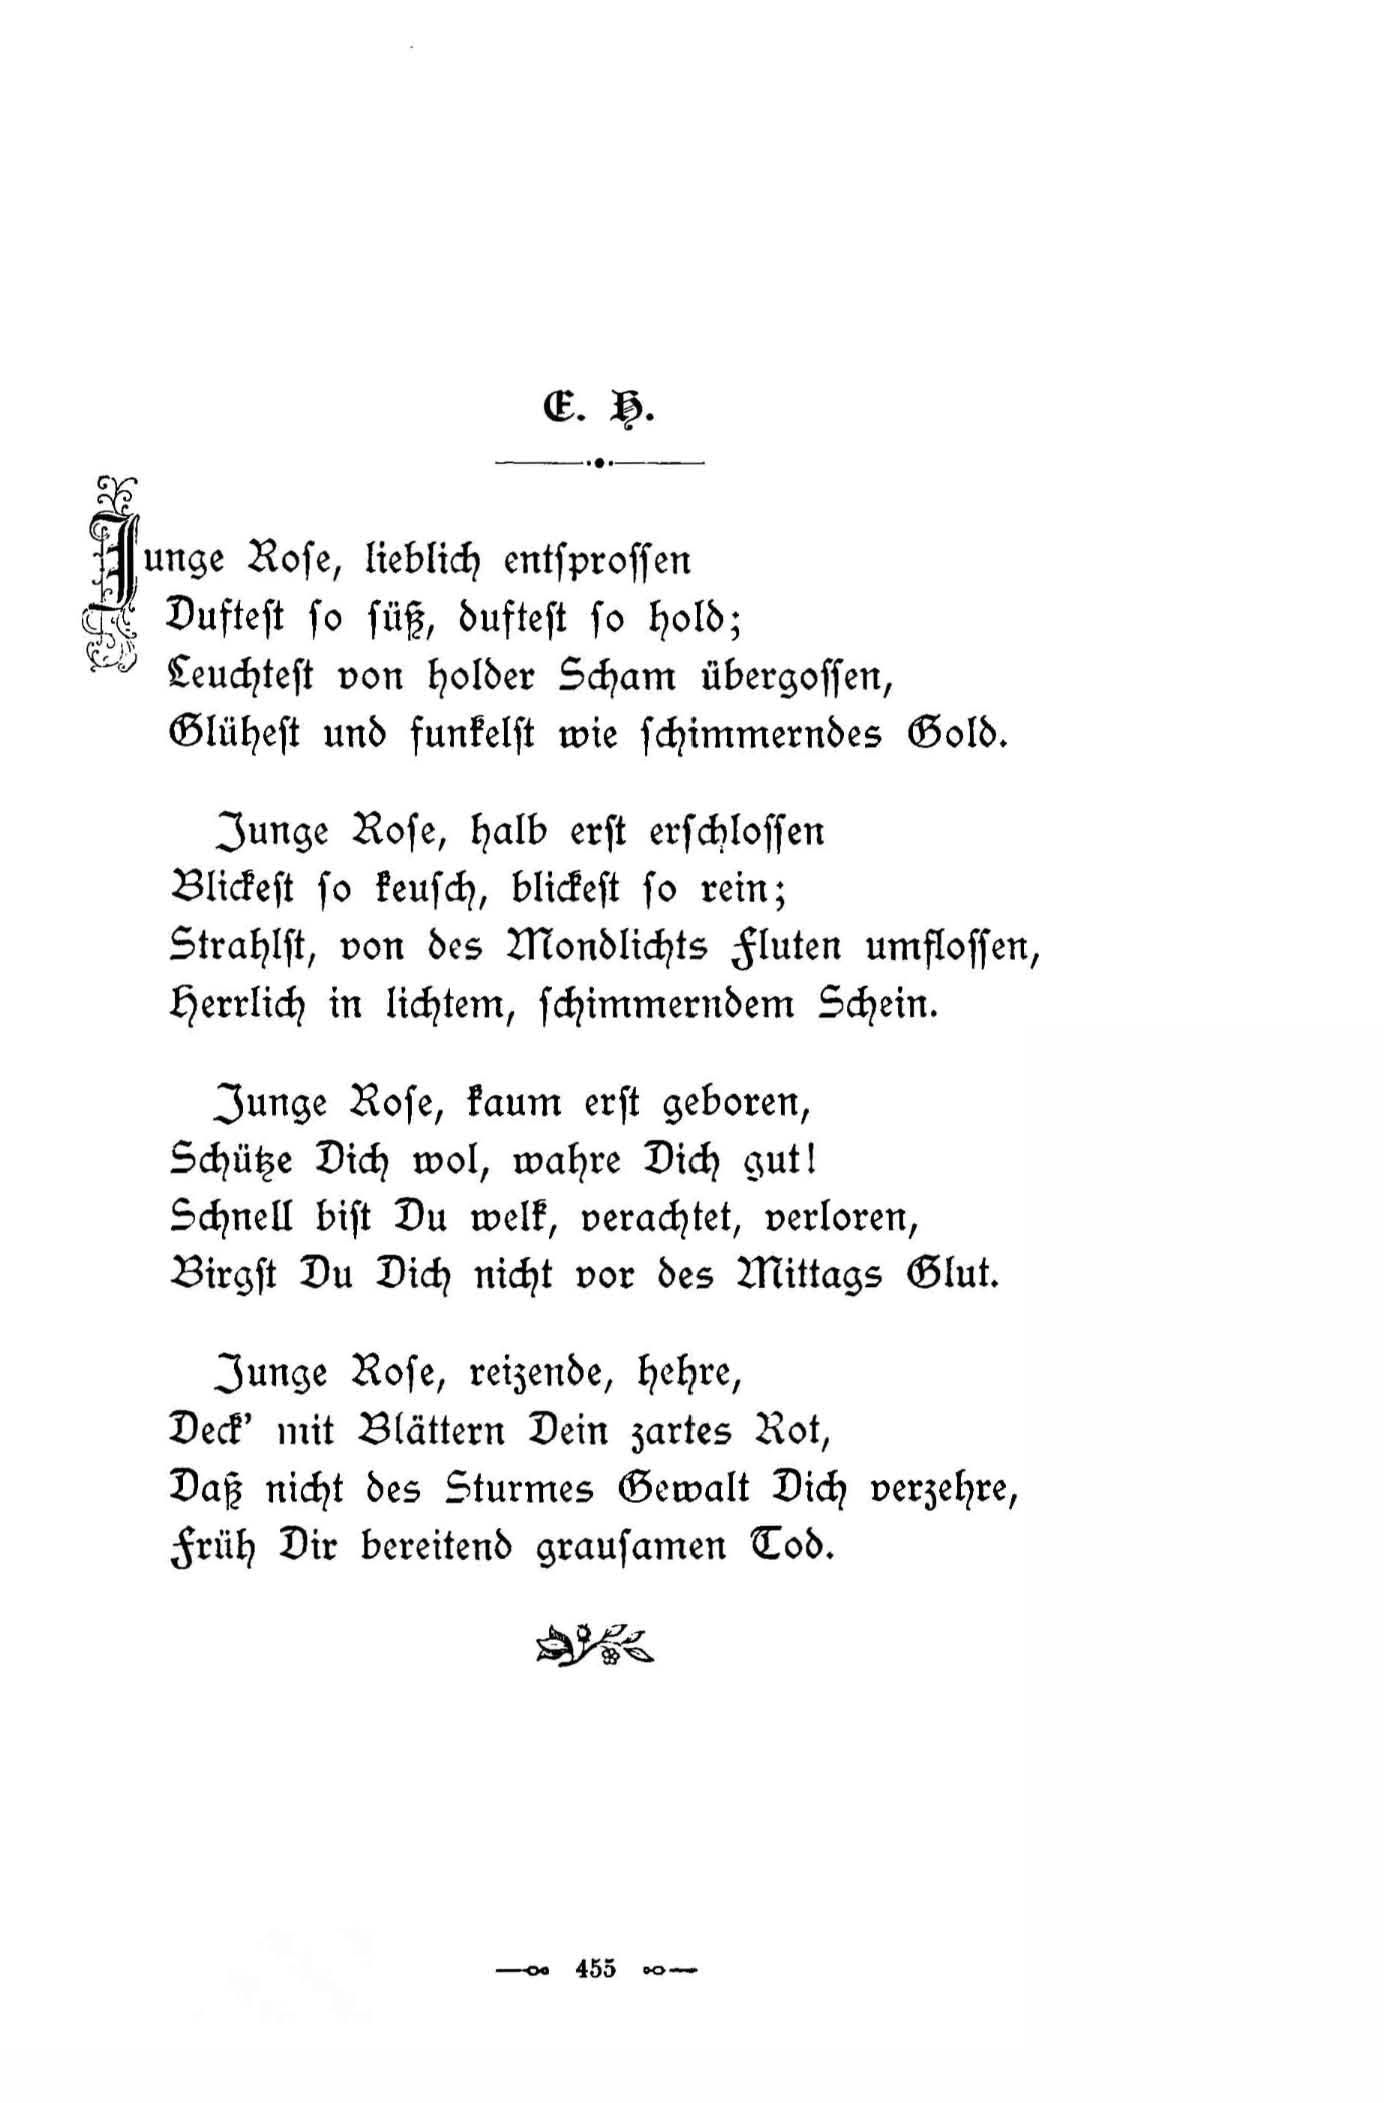 Junge Rose, lieblich entsprossen ... (1896) | 1. (455) Main body of text